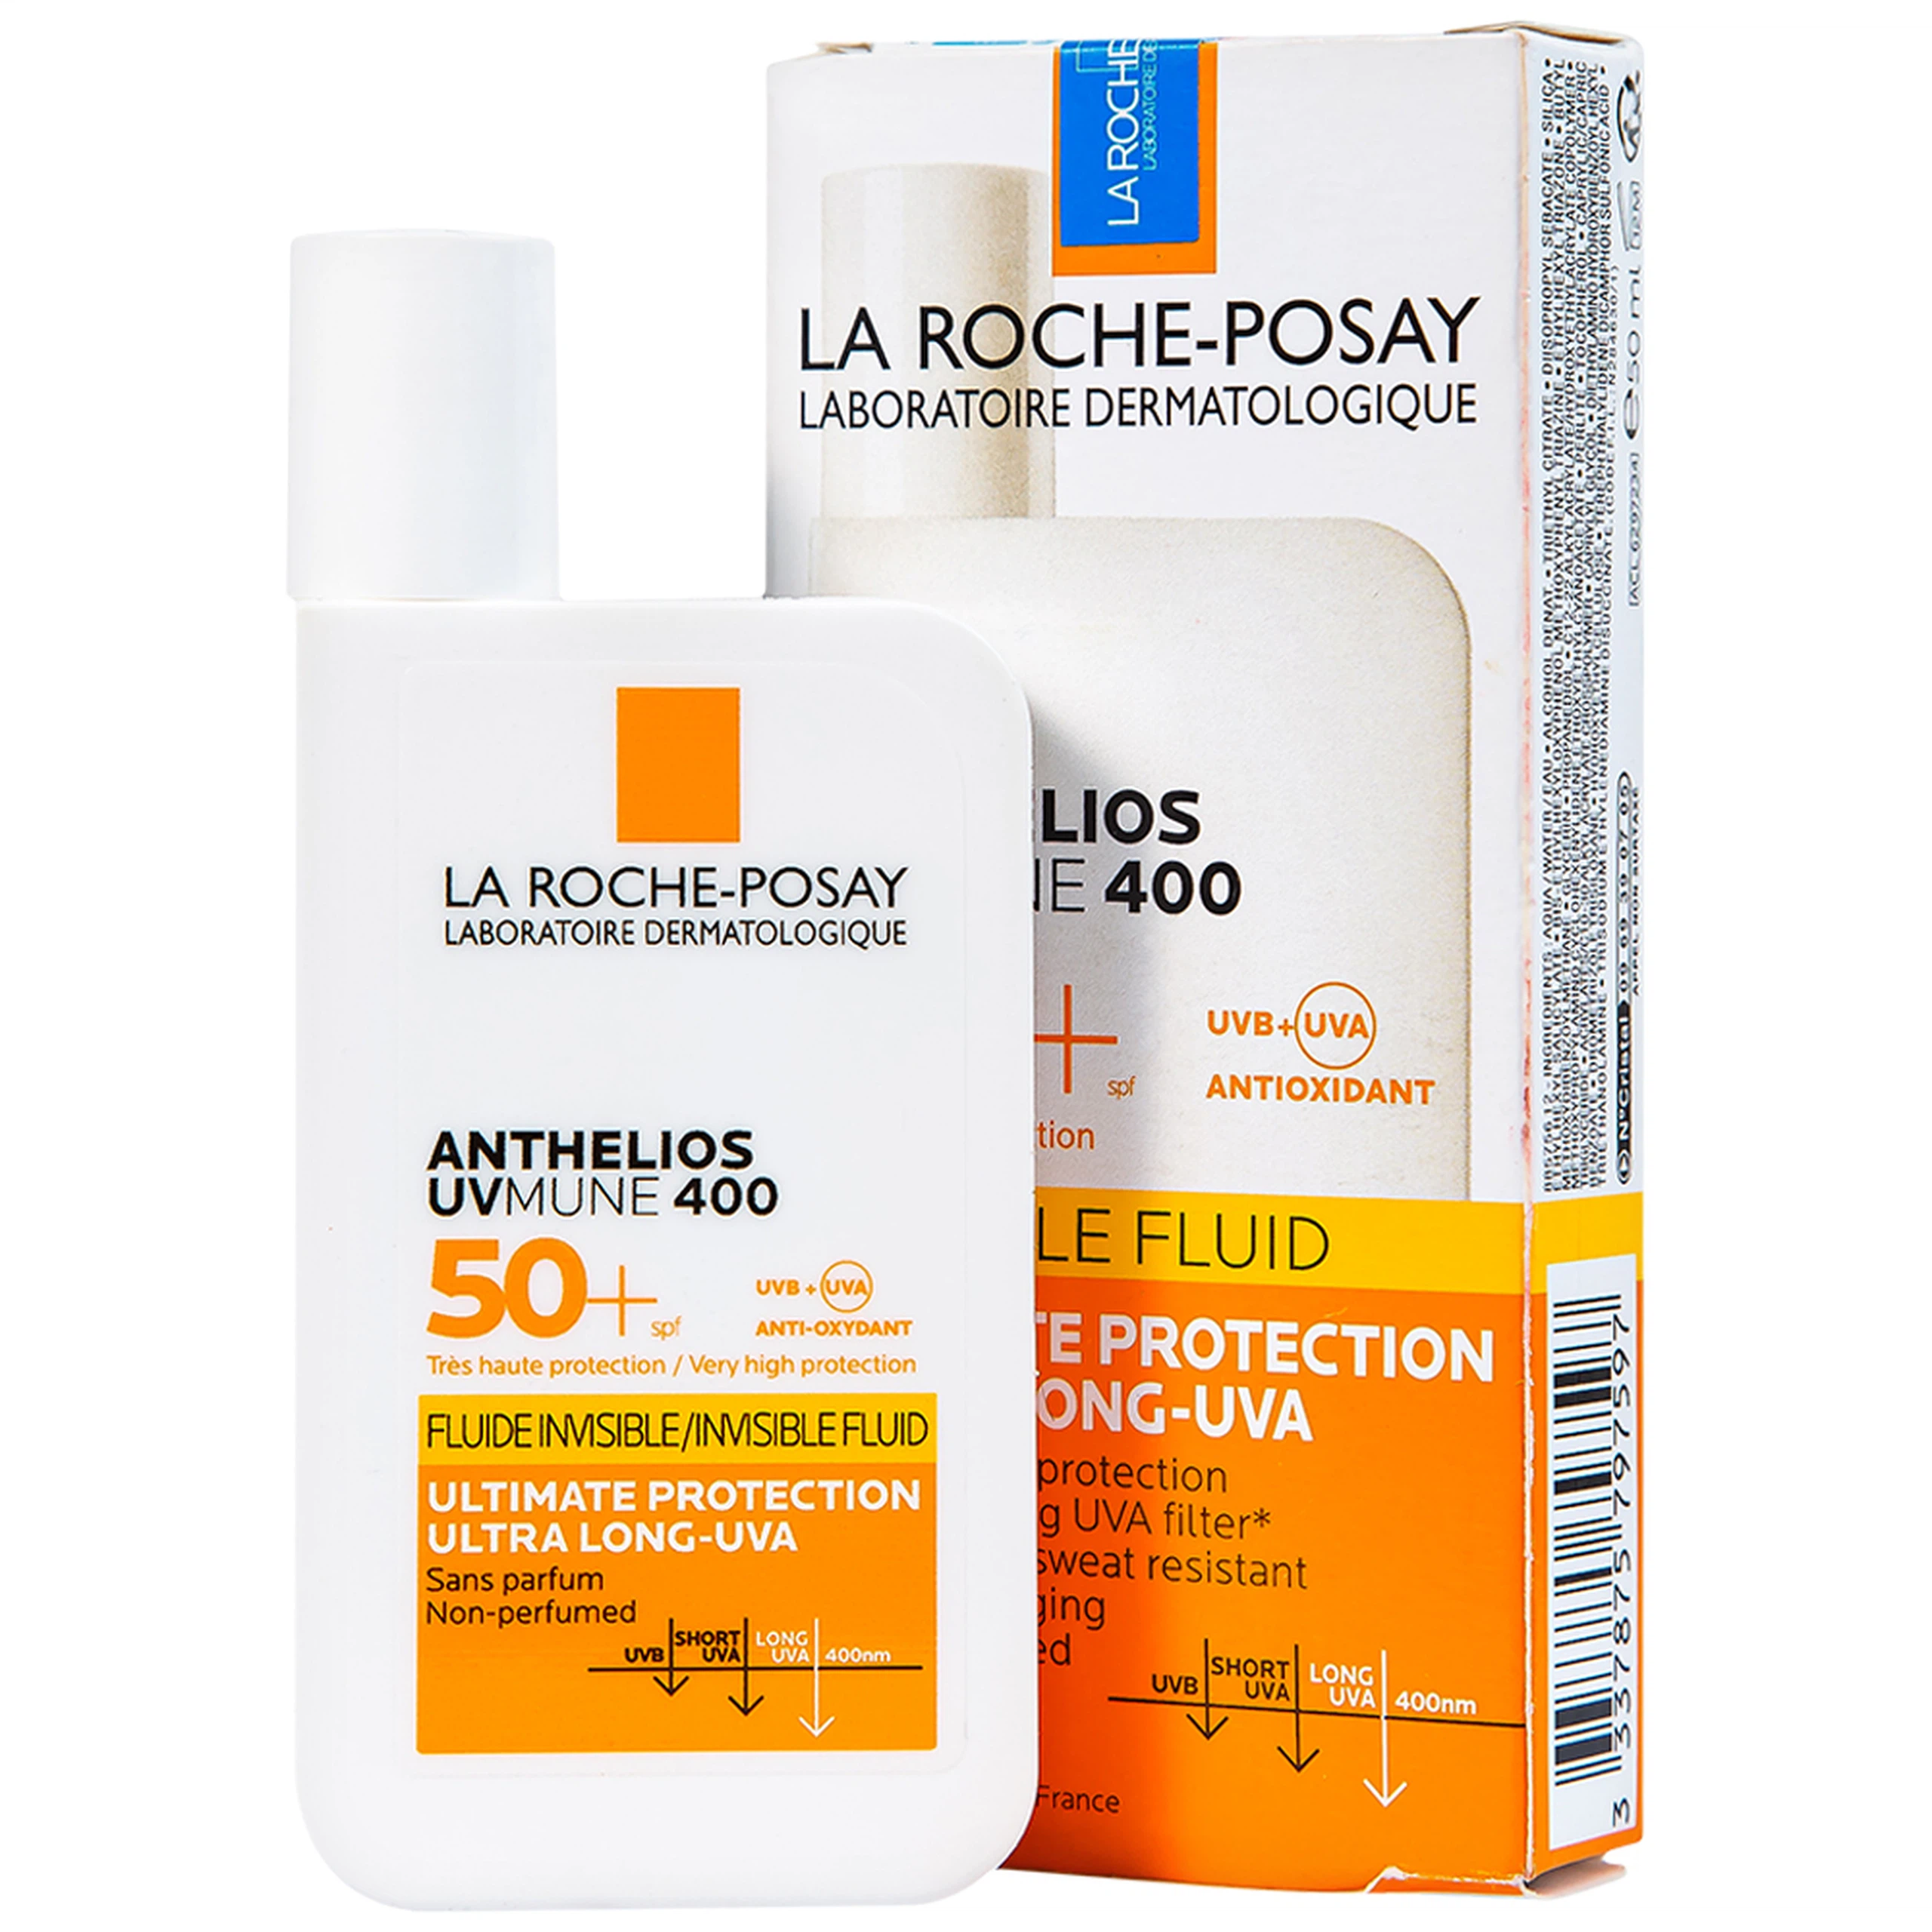 Sữa chống nắng lâu trôi La Roche-Posay Laboratoire Dermatologiue Anthelios Uvmune 400 Invisible Fuild (50ml)